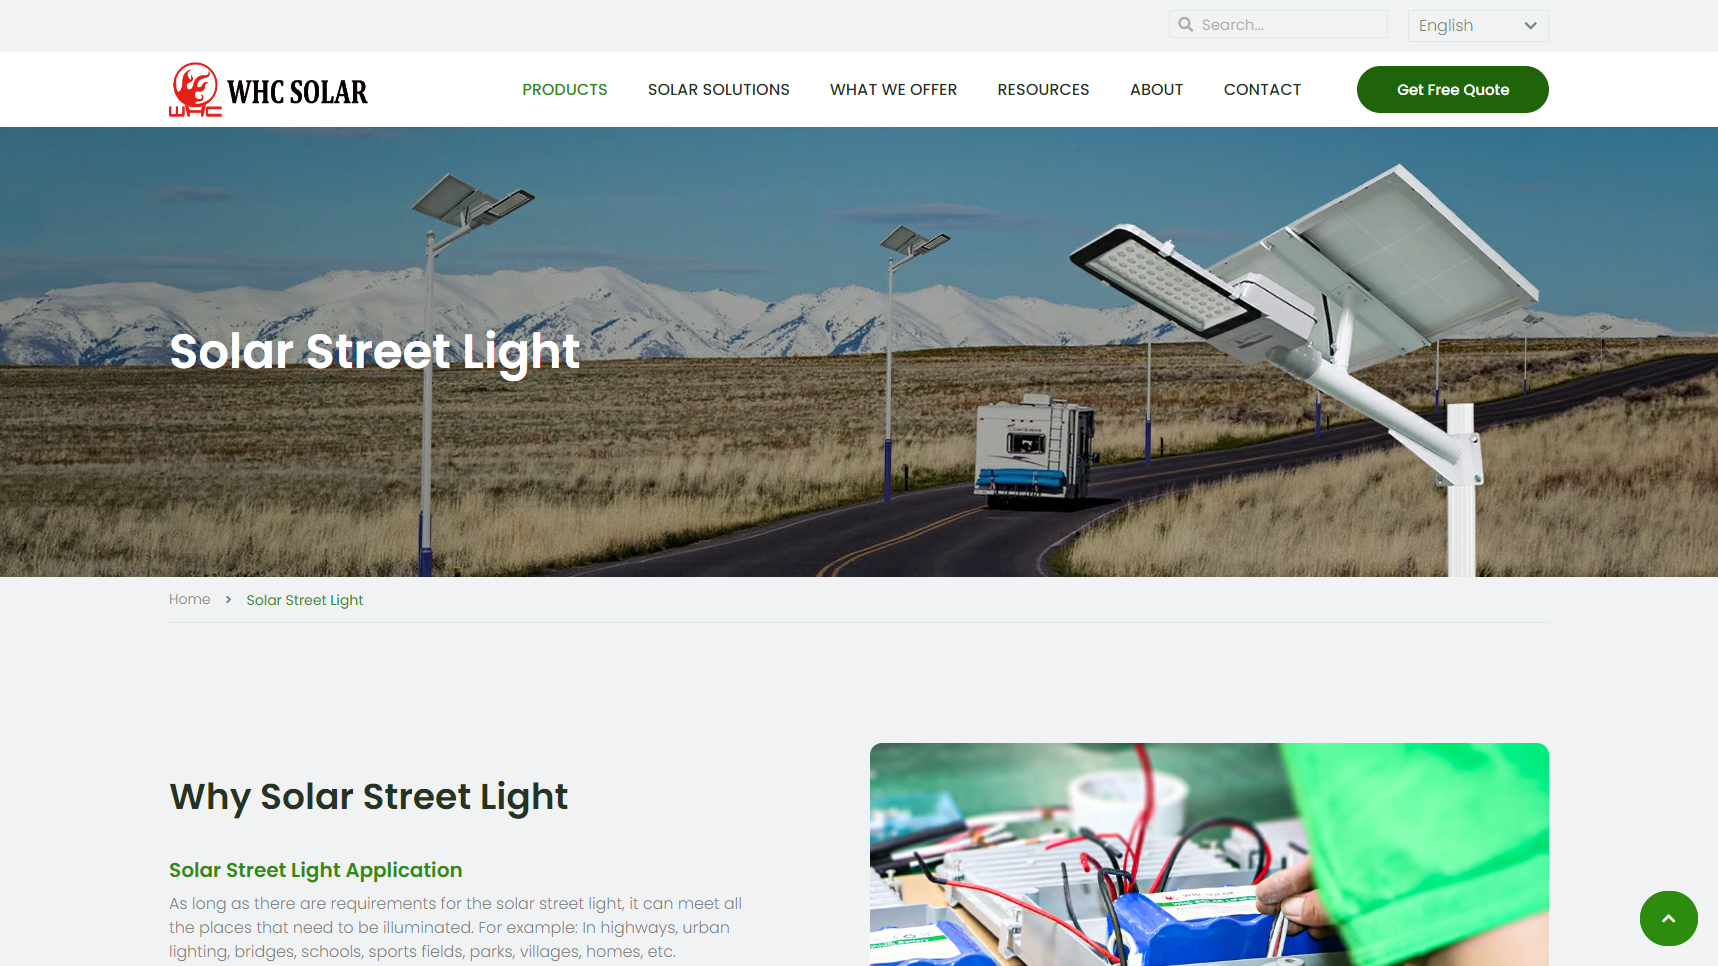 WHC SOLAR - Solar Street Light Manufacturer